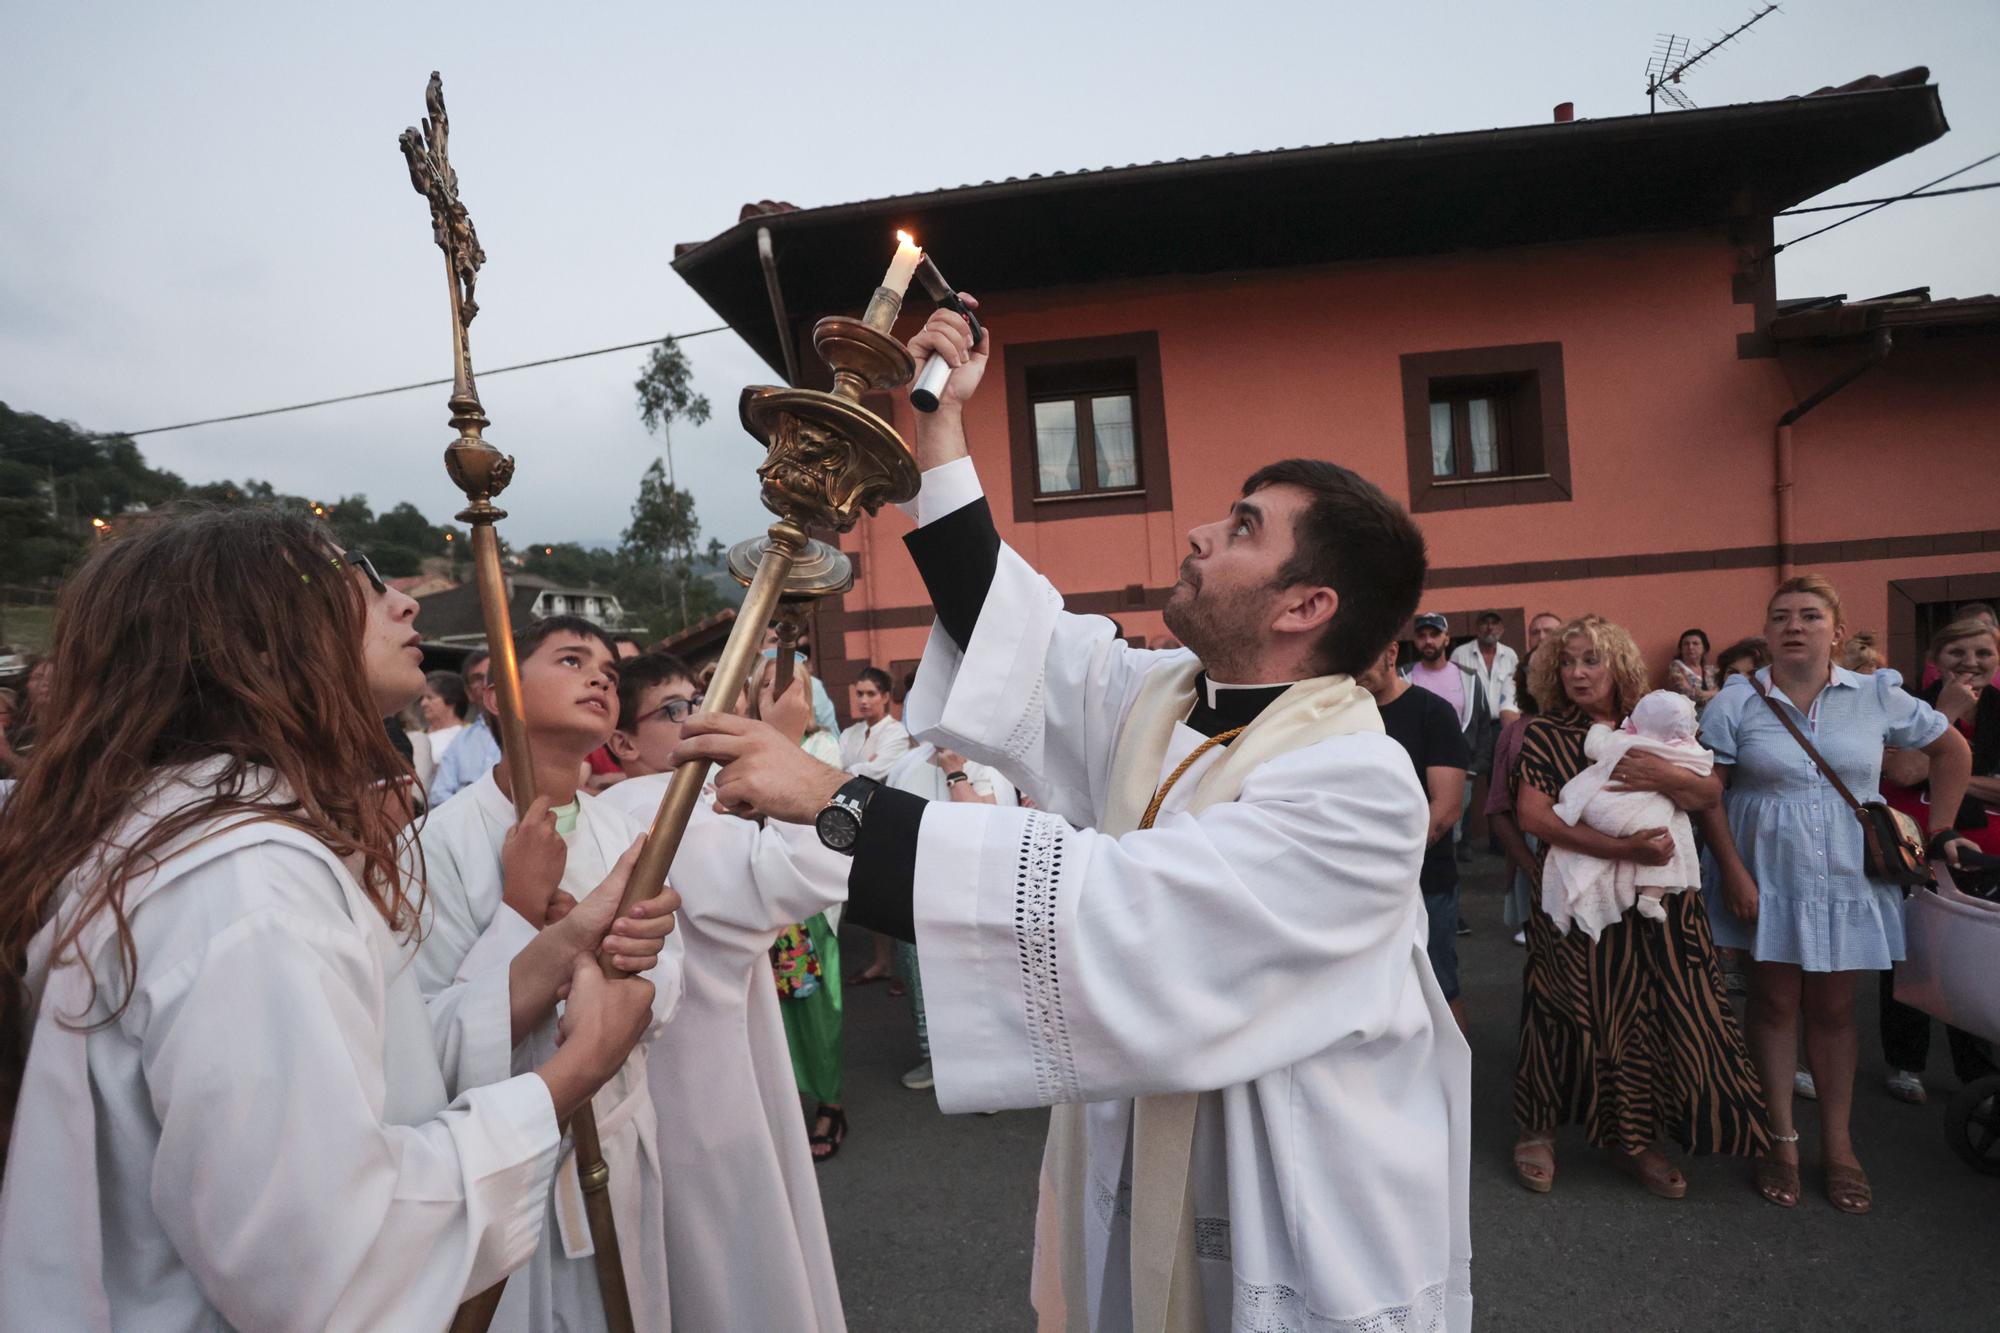 Así fue la procesión de la virgen del Otero que iluminó la noche de Pola de Laviana